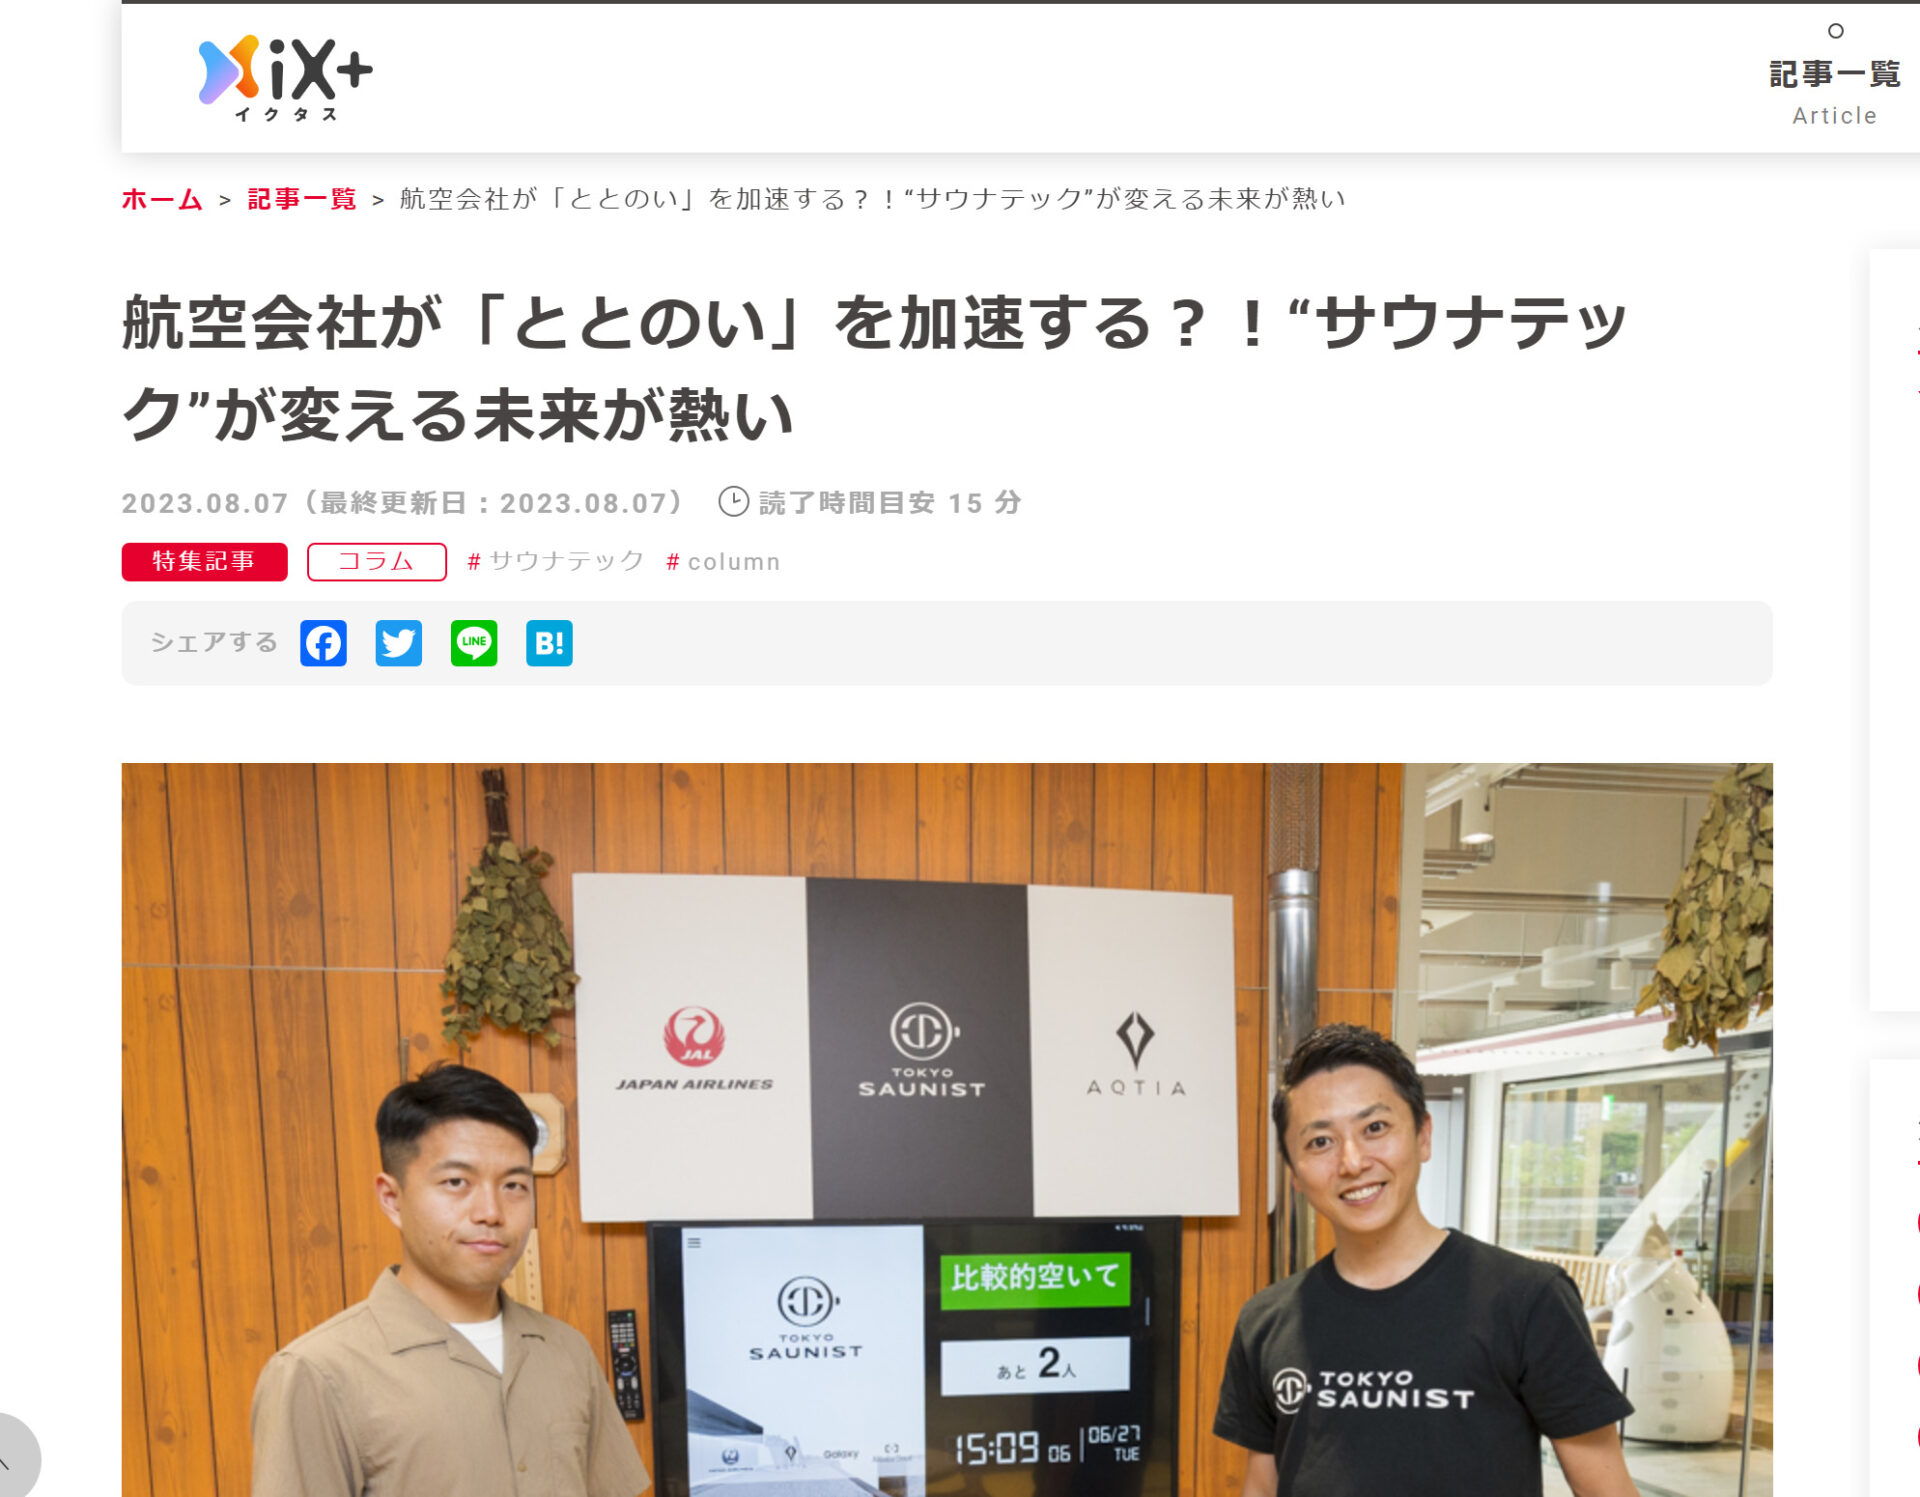 「iX+(イクタス)に「TOKYO SAUNIST」が掲載されました！」のアイキャッチ画像